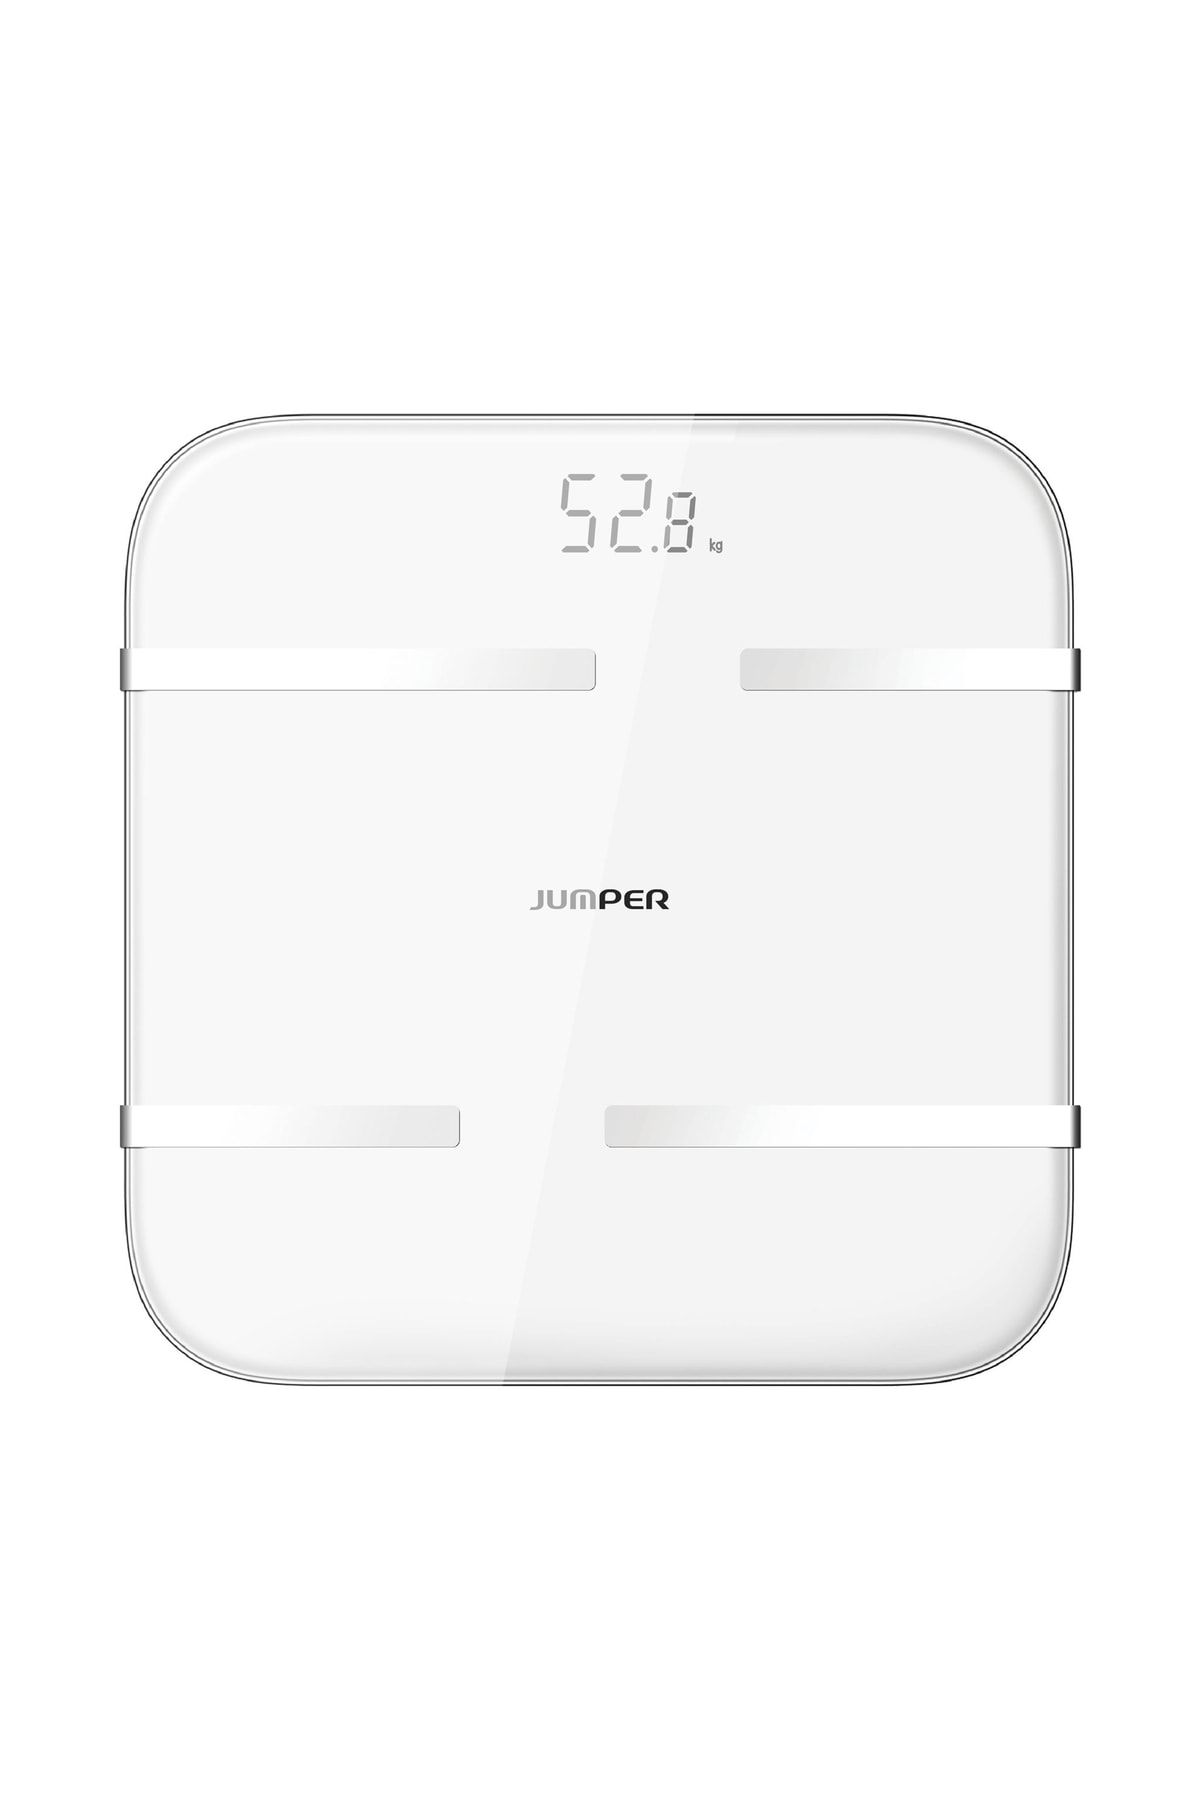 Jumper Medikal Dijital Baskül Yağ Su Kas Vücut Kitle Endeksi Kilo Ölçer Akıllı Bluetooth Tartı Jpd-bfs200a